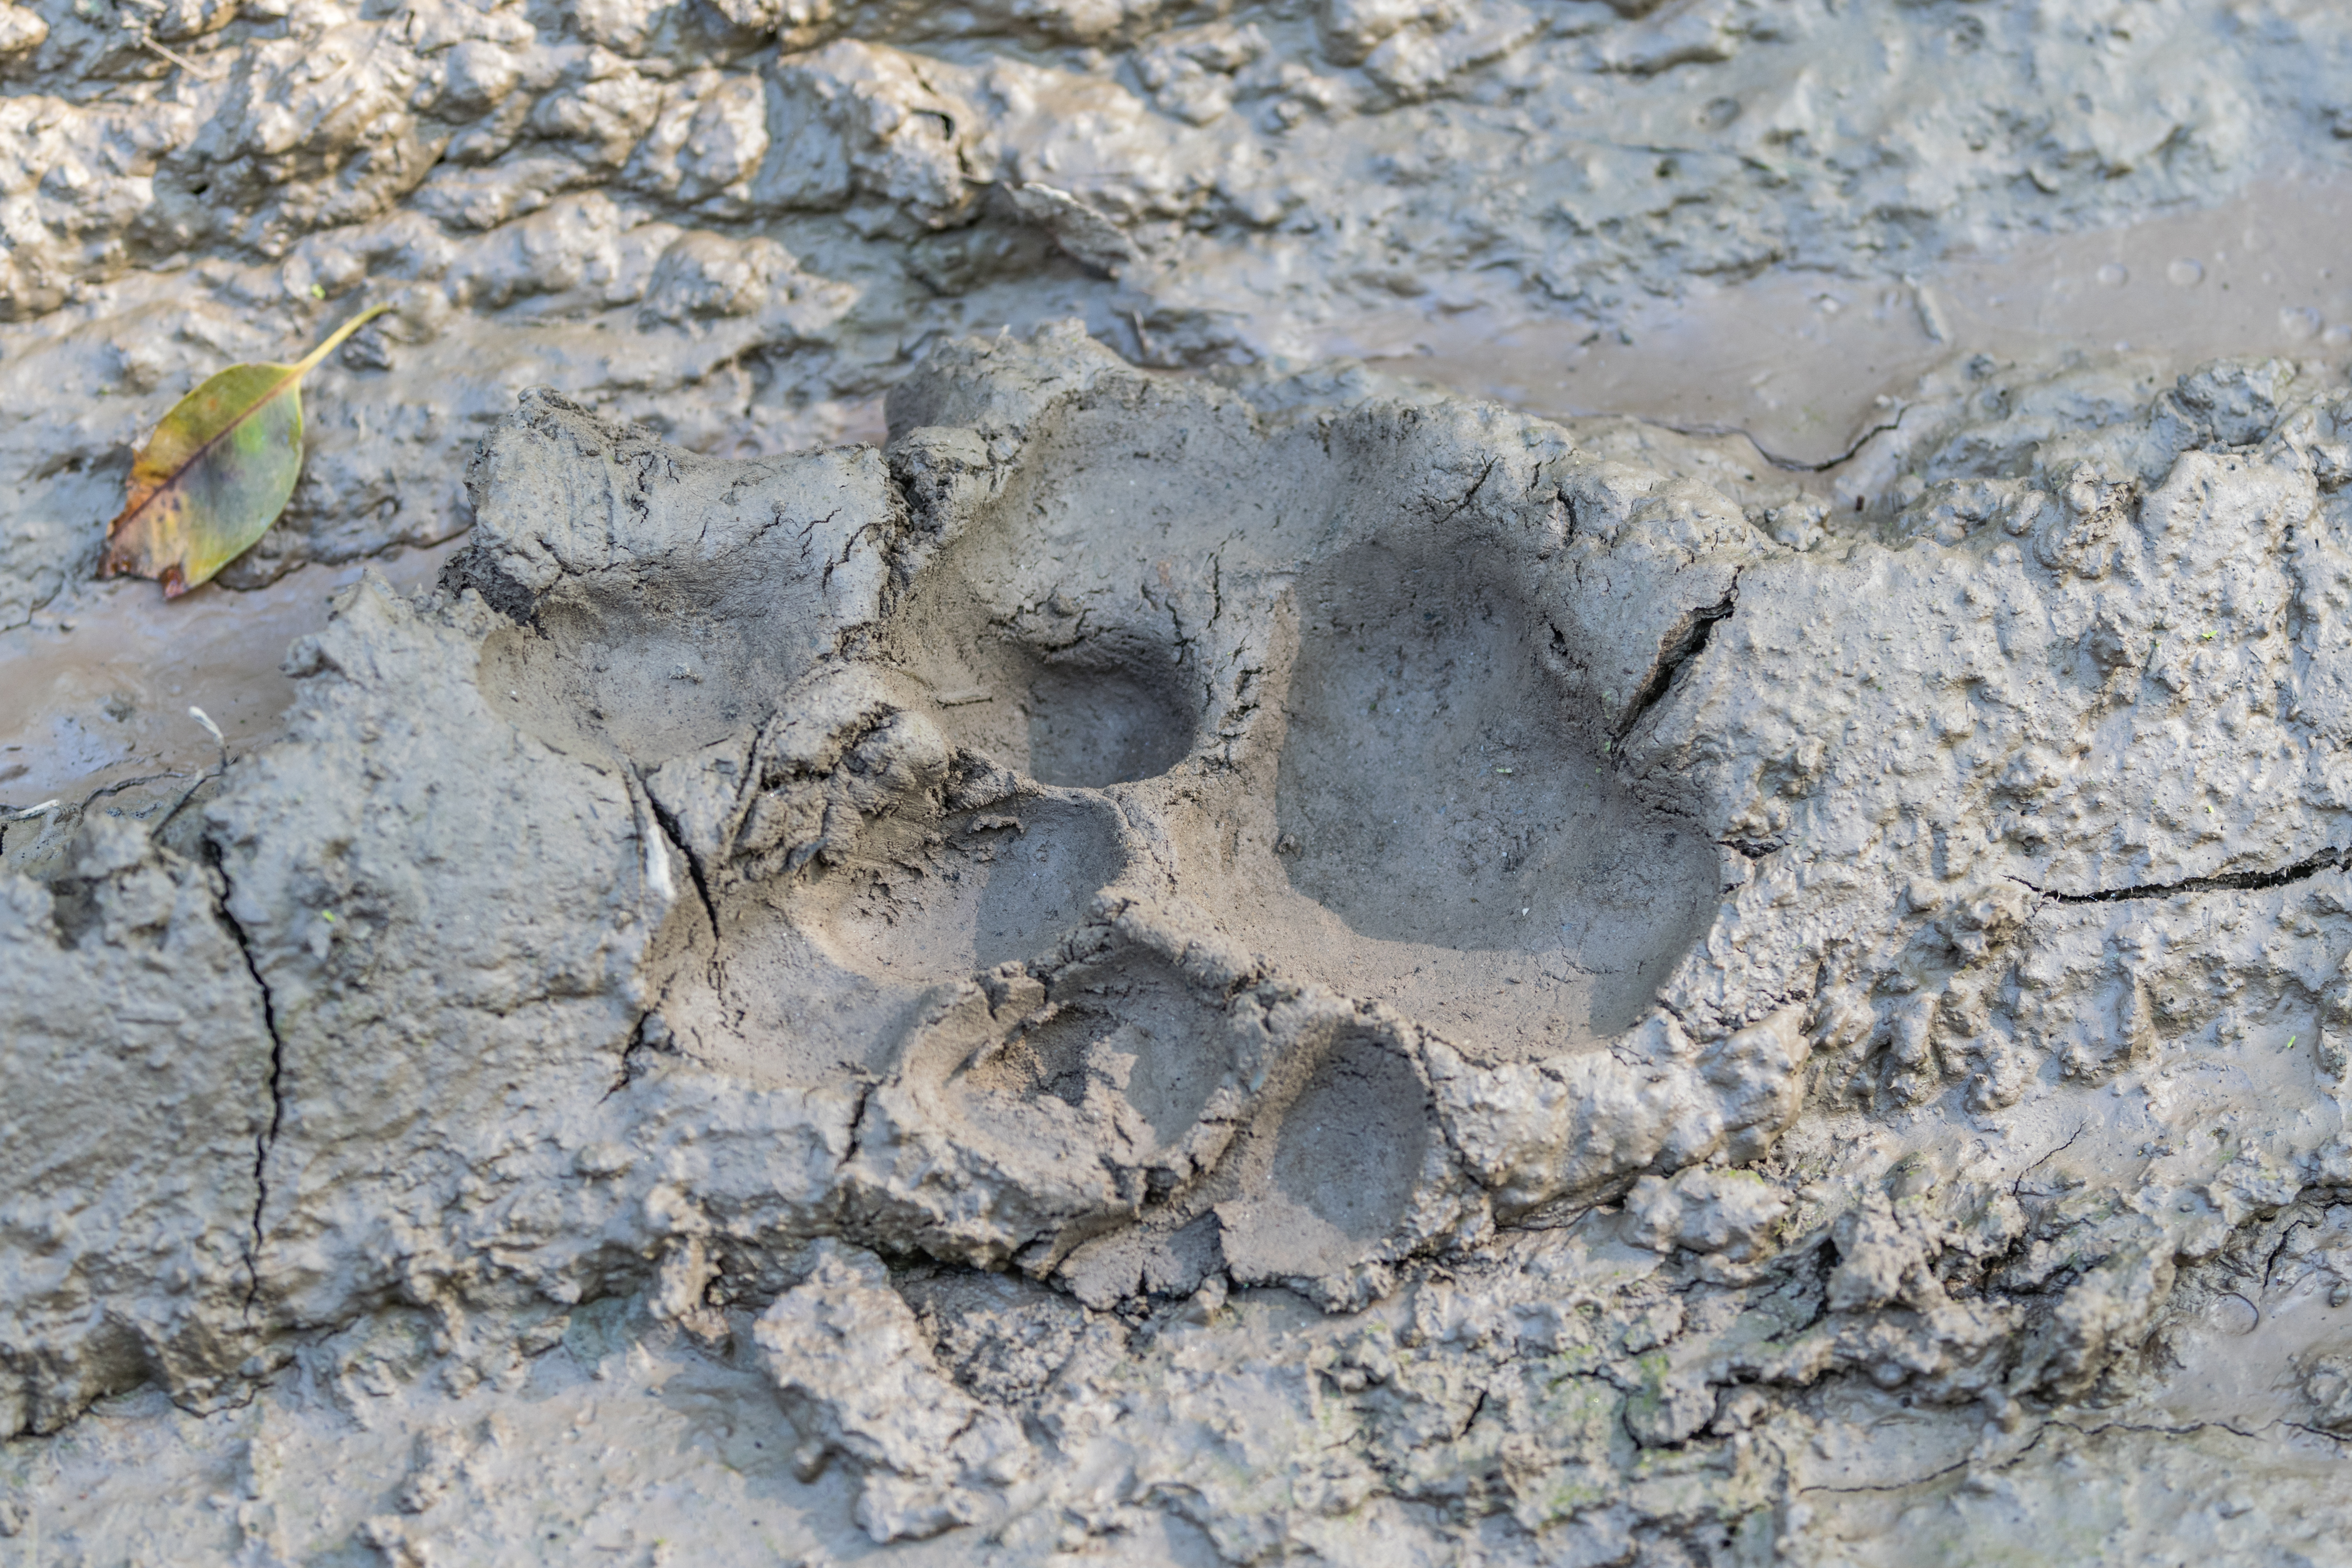 Tiger's footprint at their natural habitat